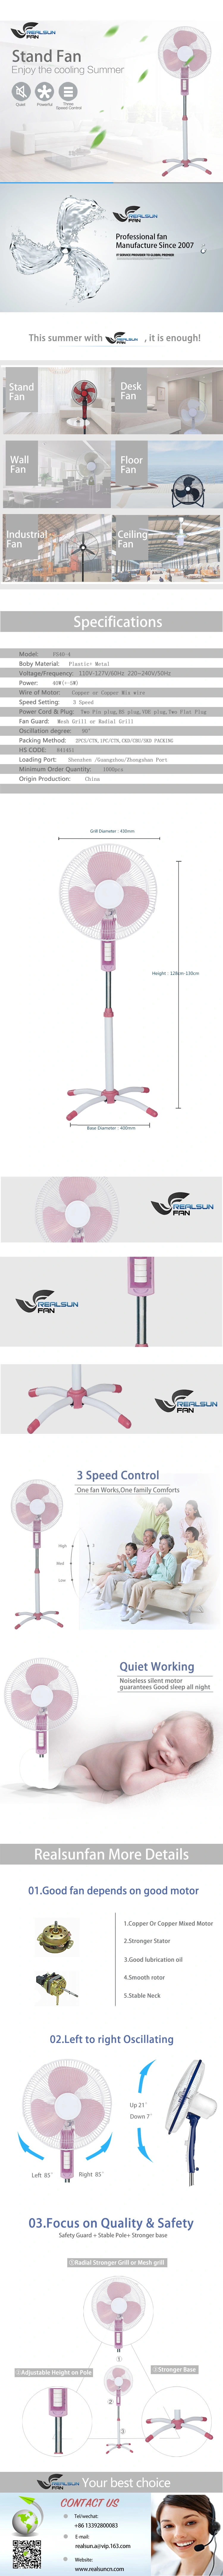 16 Inch Stand Fan/ Pedestal Fan with Light- Fs40-4